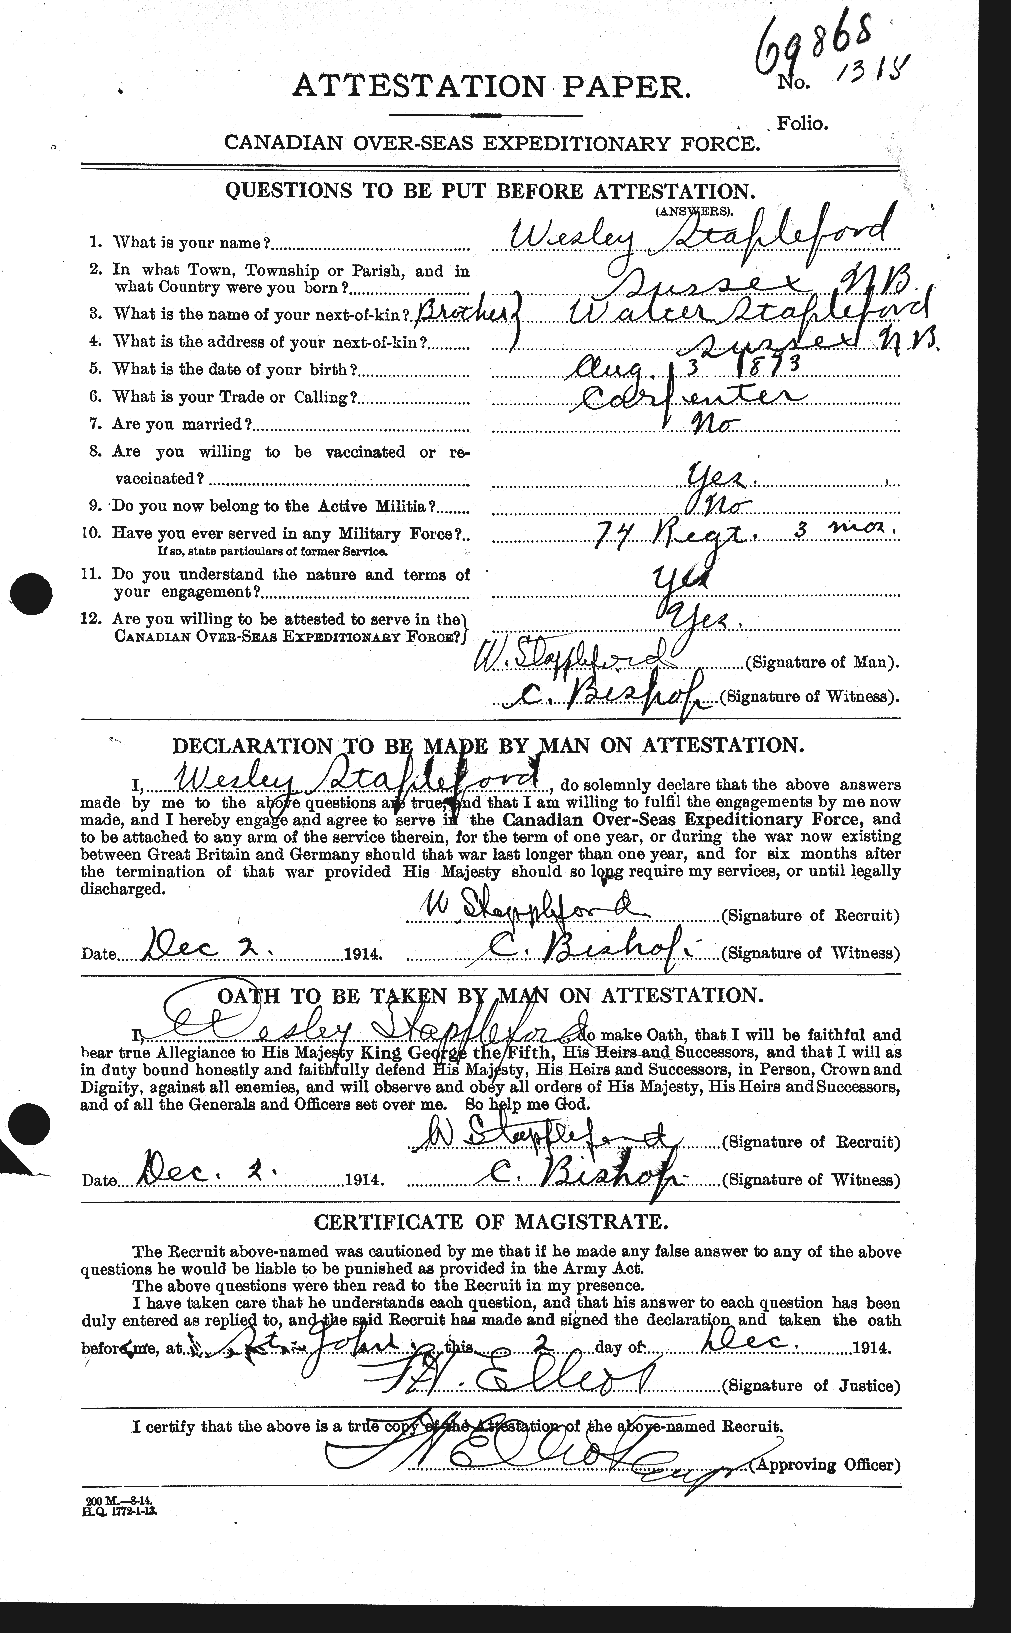 Dossiers du Personnel de la Première Guerre mondiale - CEC 114264a